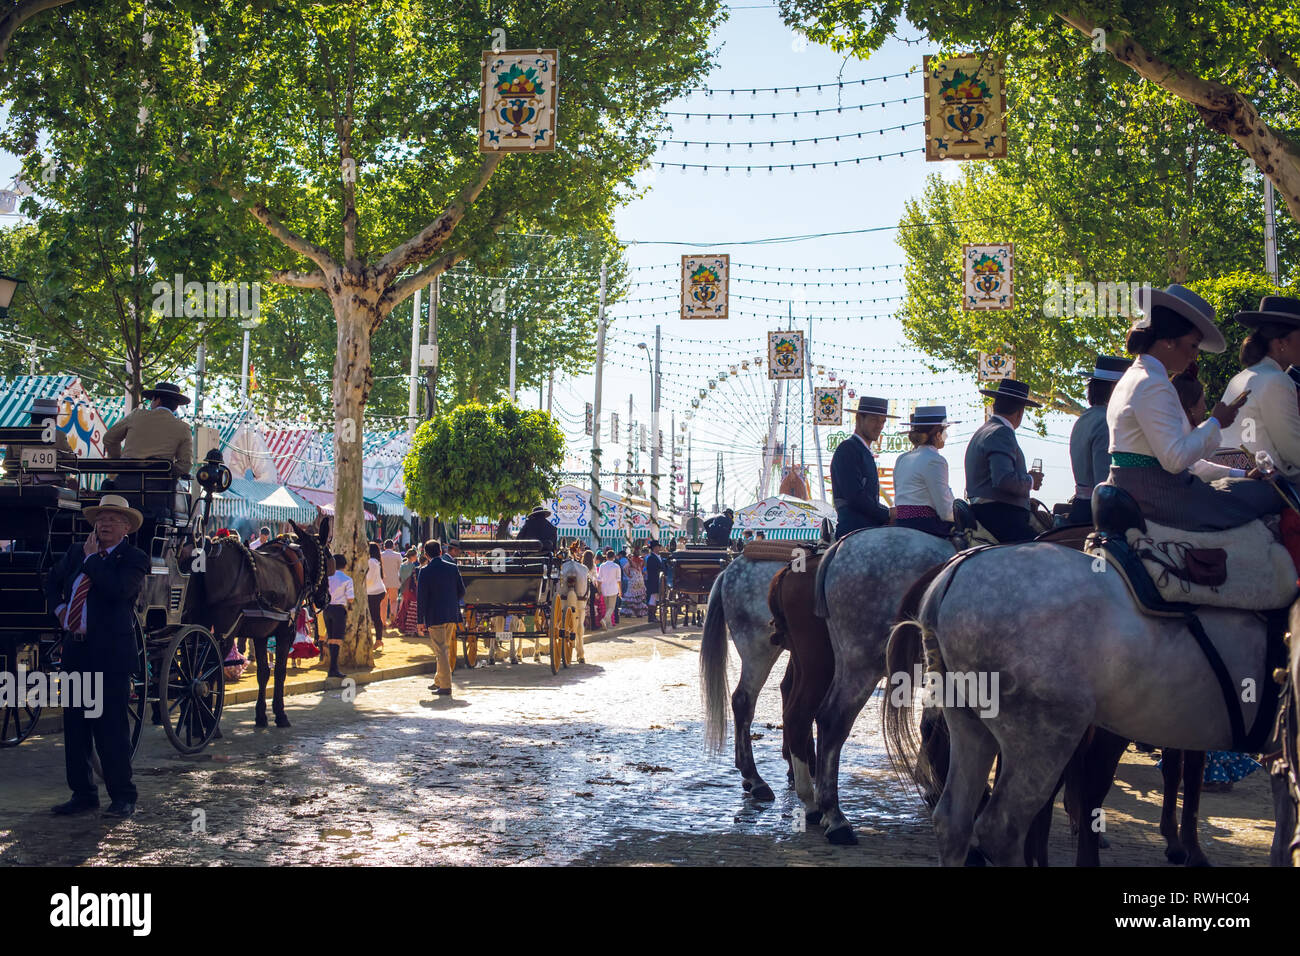 Reiter und Menschen in traditionellen Kostümen genießen April Messe. Sevilla Messe (Feria de Sevilla). Stockfoto